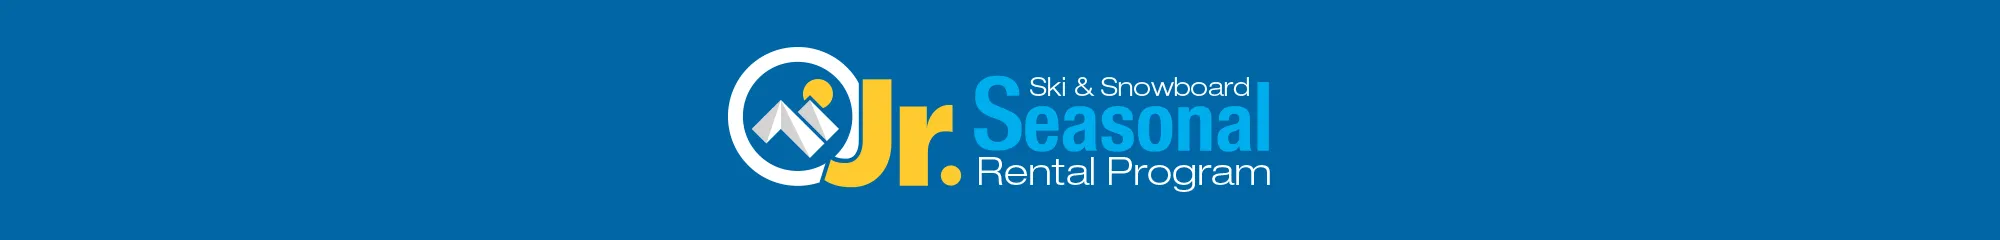 Junior Ski & Snowboard Seasonal Rentals